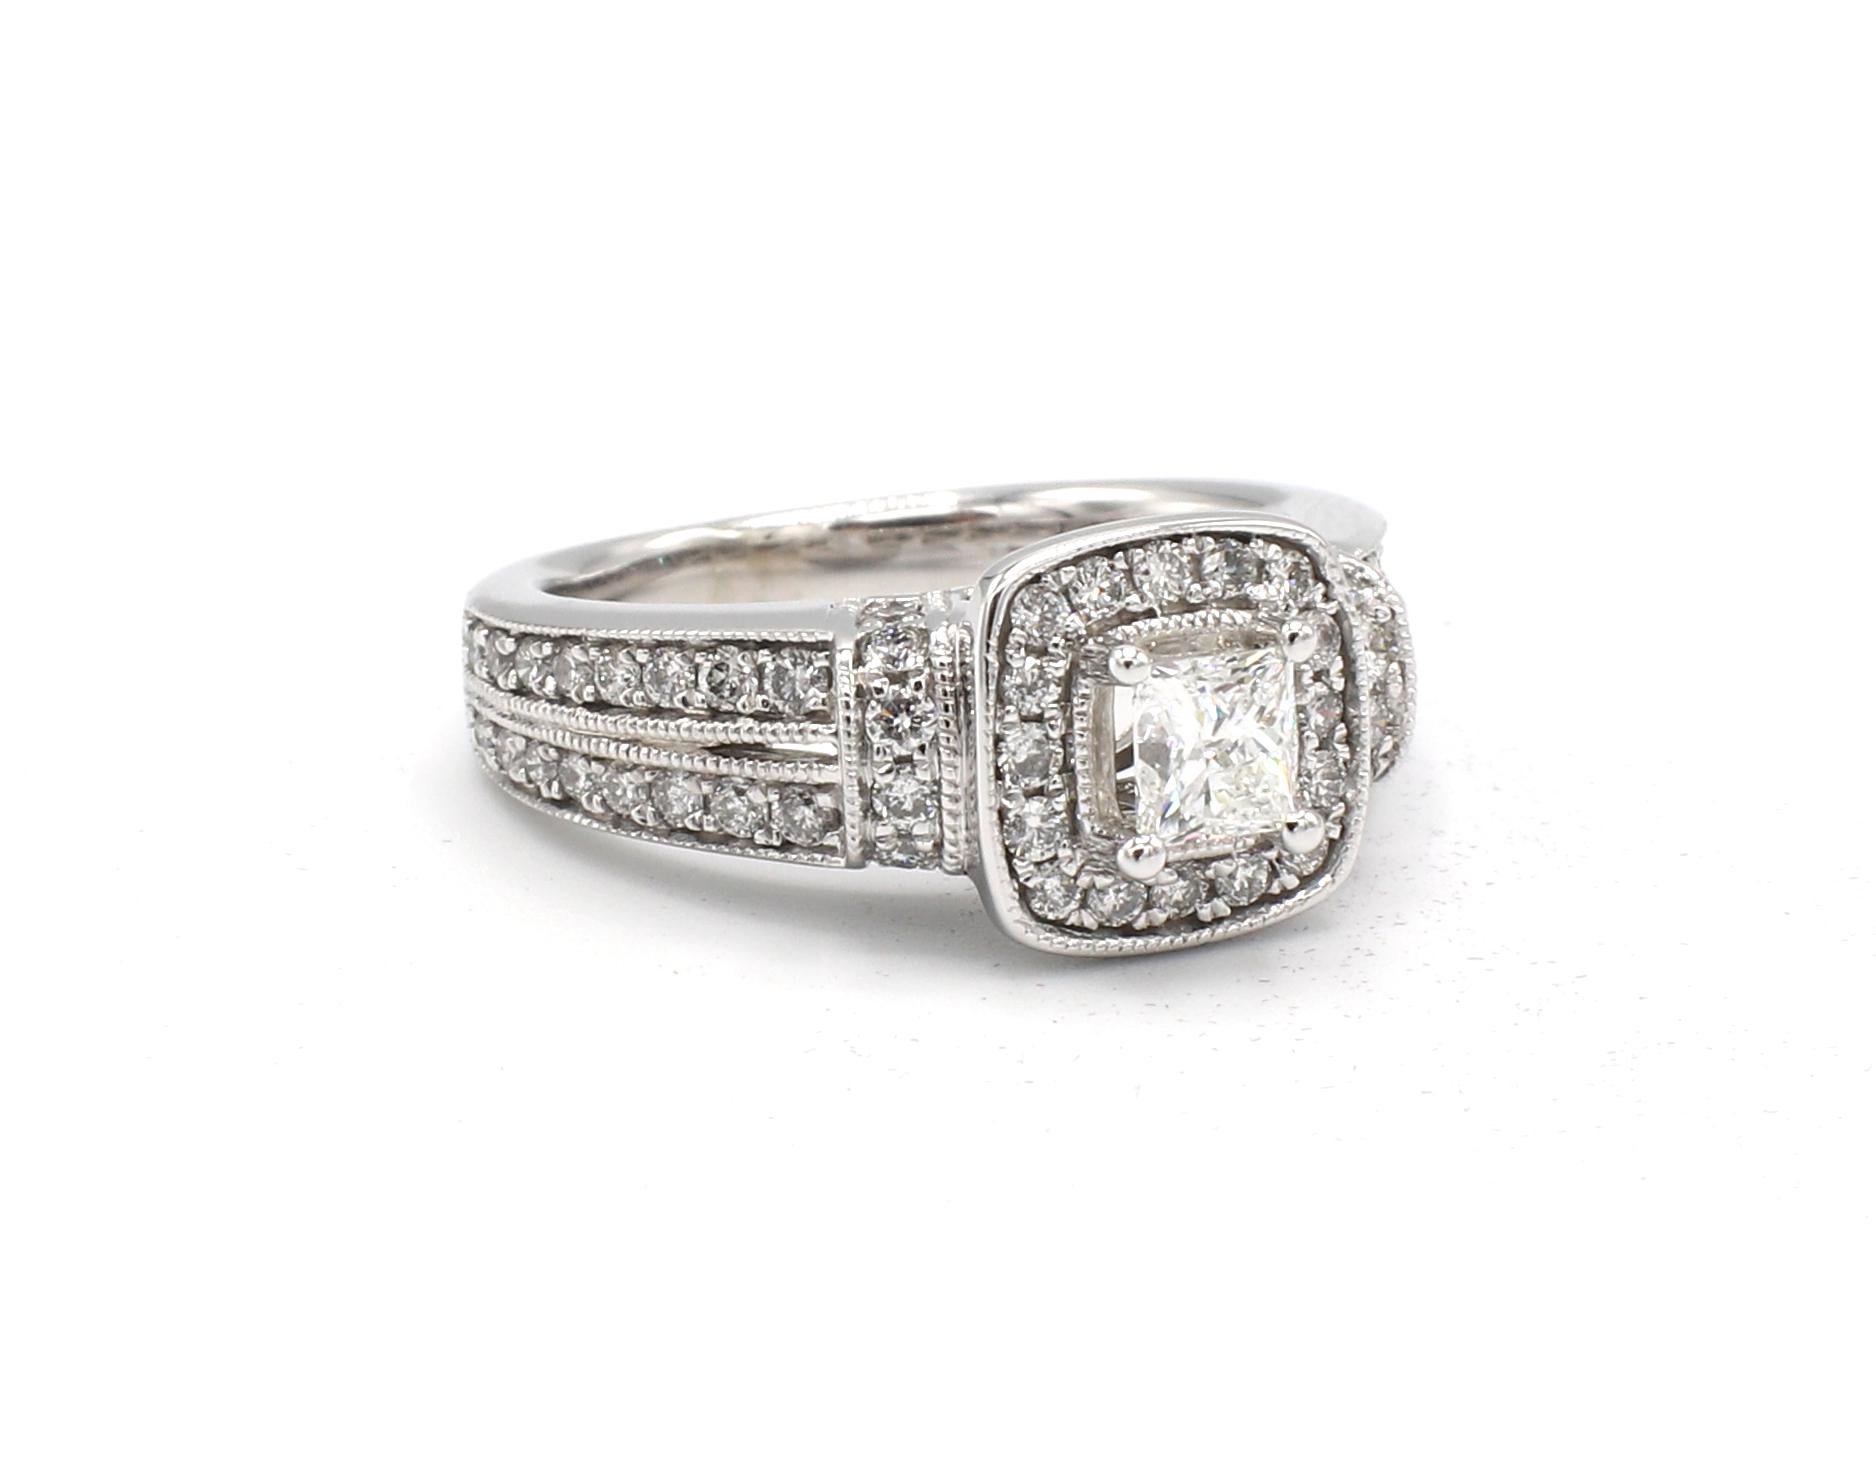 14 Karat White Gold .90 Carat Princess Cut & Round Diamond Halo Engagement Ring

Metal: 14k white gold
Weight: 4.96 grams
Diamonds: Approx. .90 CTW, 1 princess cut diamond approx. .30 CT, 56 round diamonds approx. .60 CTW G VS
Size: 5 (US)
Top of